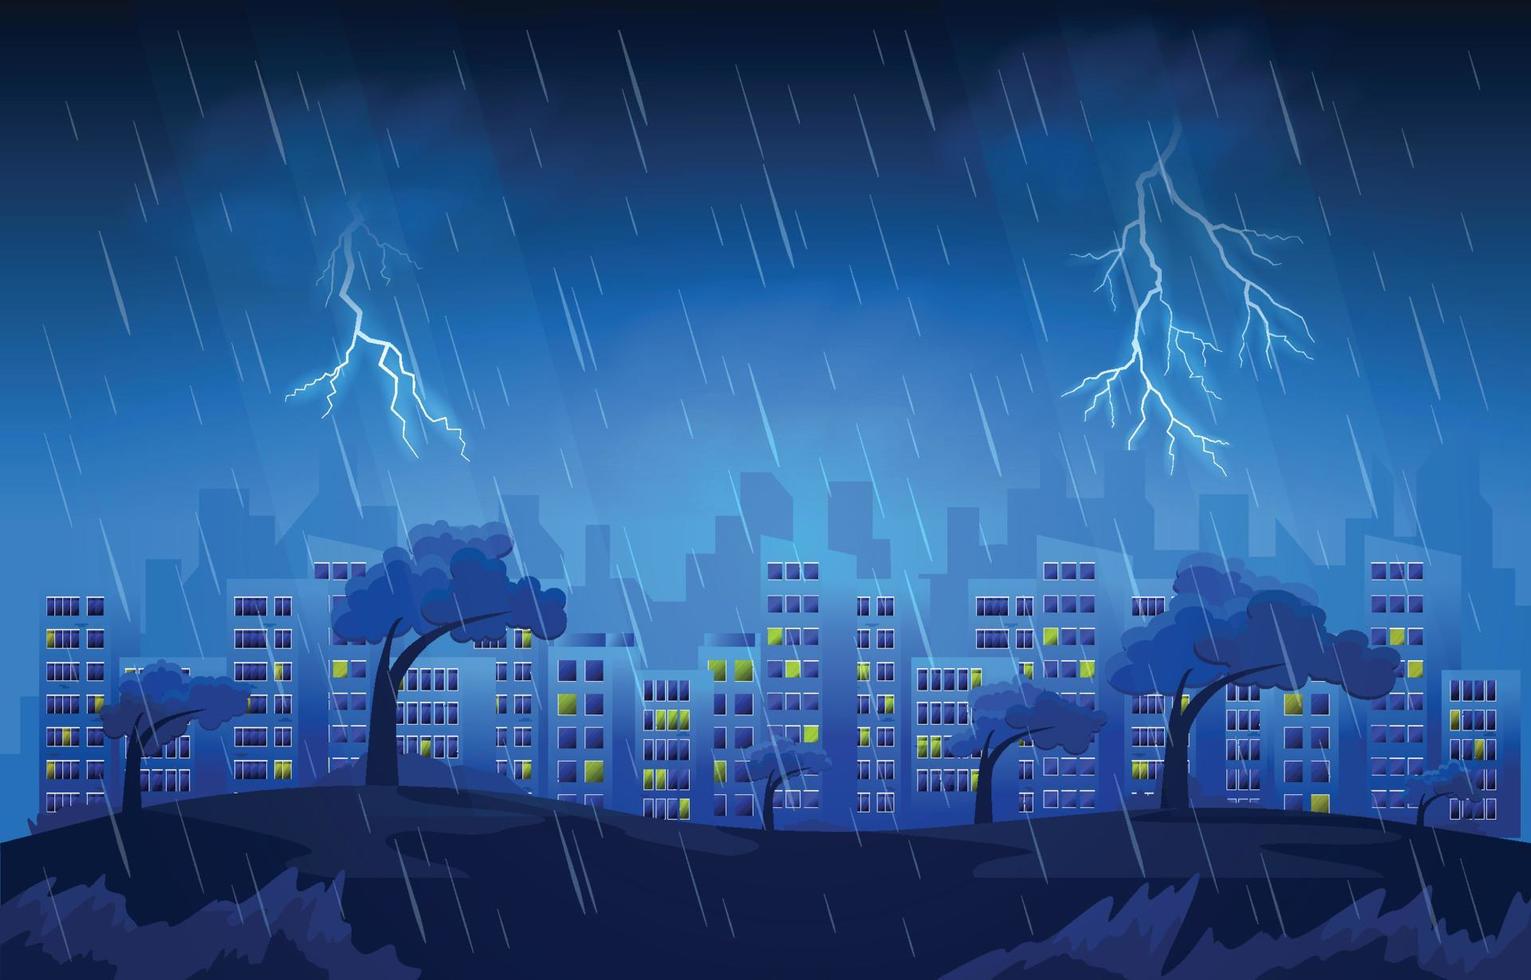 trueno tormenta relámpago fuerte lluvia ciudad edificio horizonte paisaje urbano ilustración vector